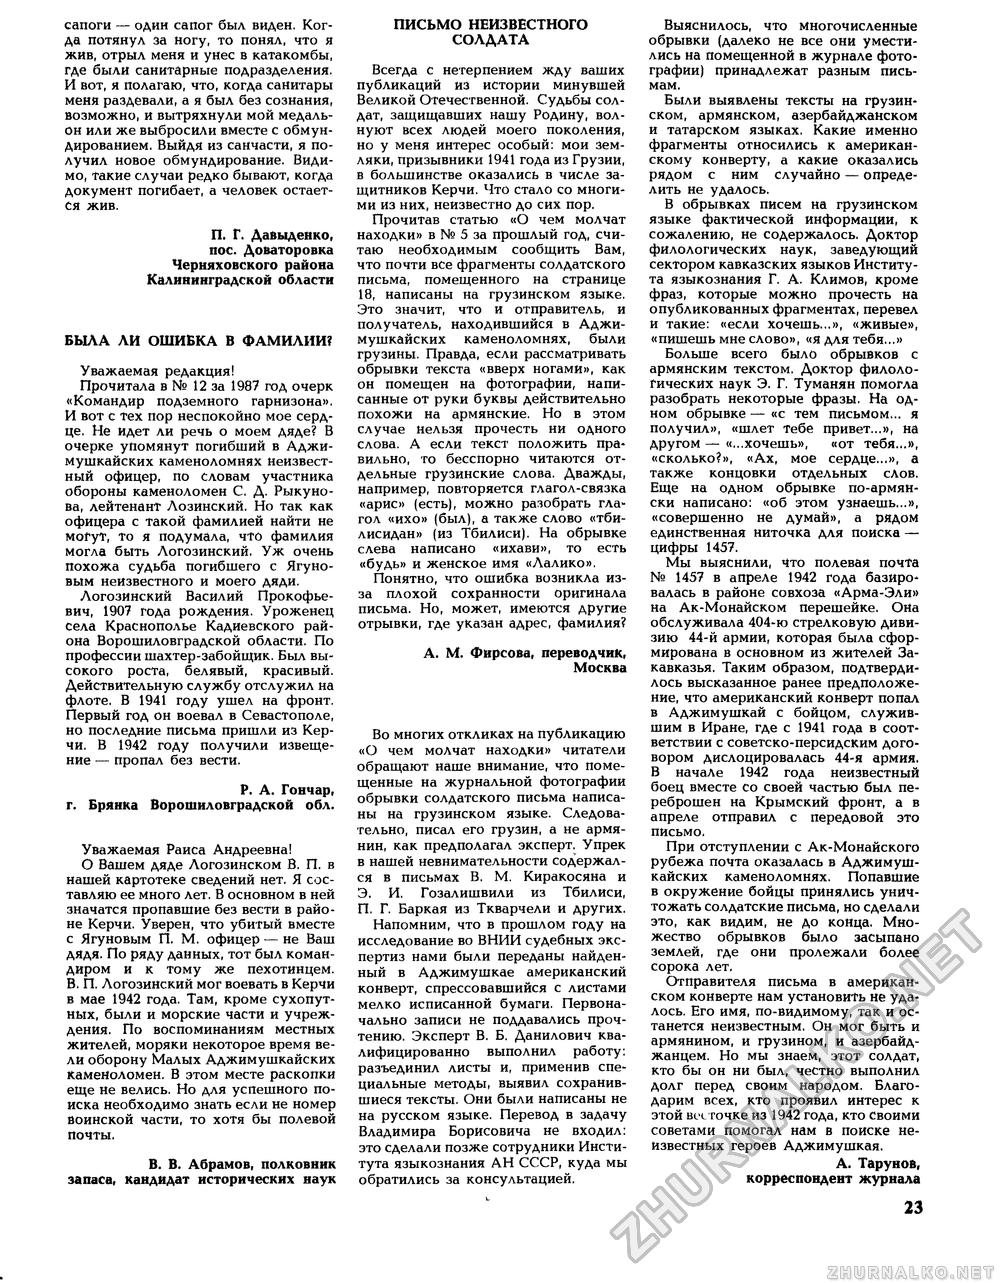 Вокруг света 1989-05, страница 25